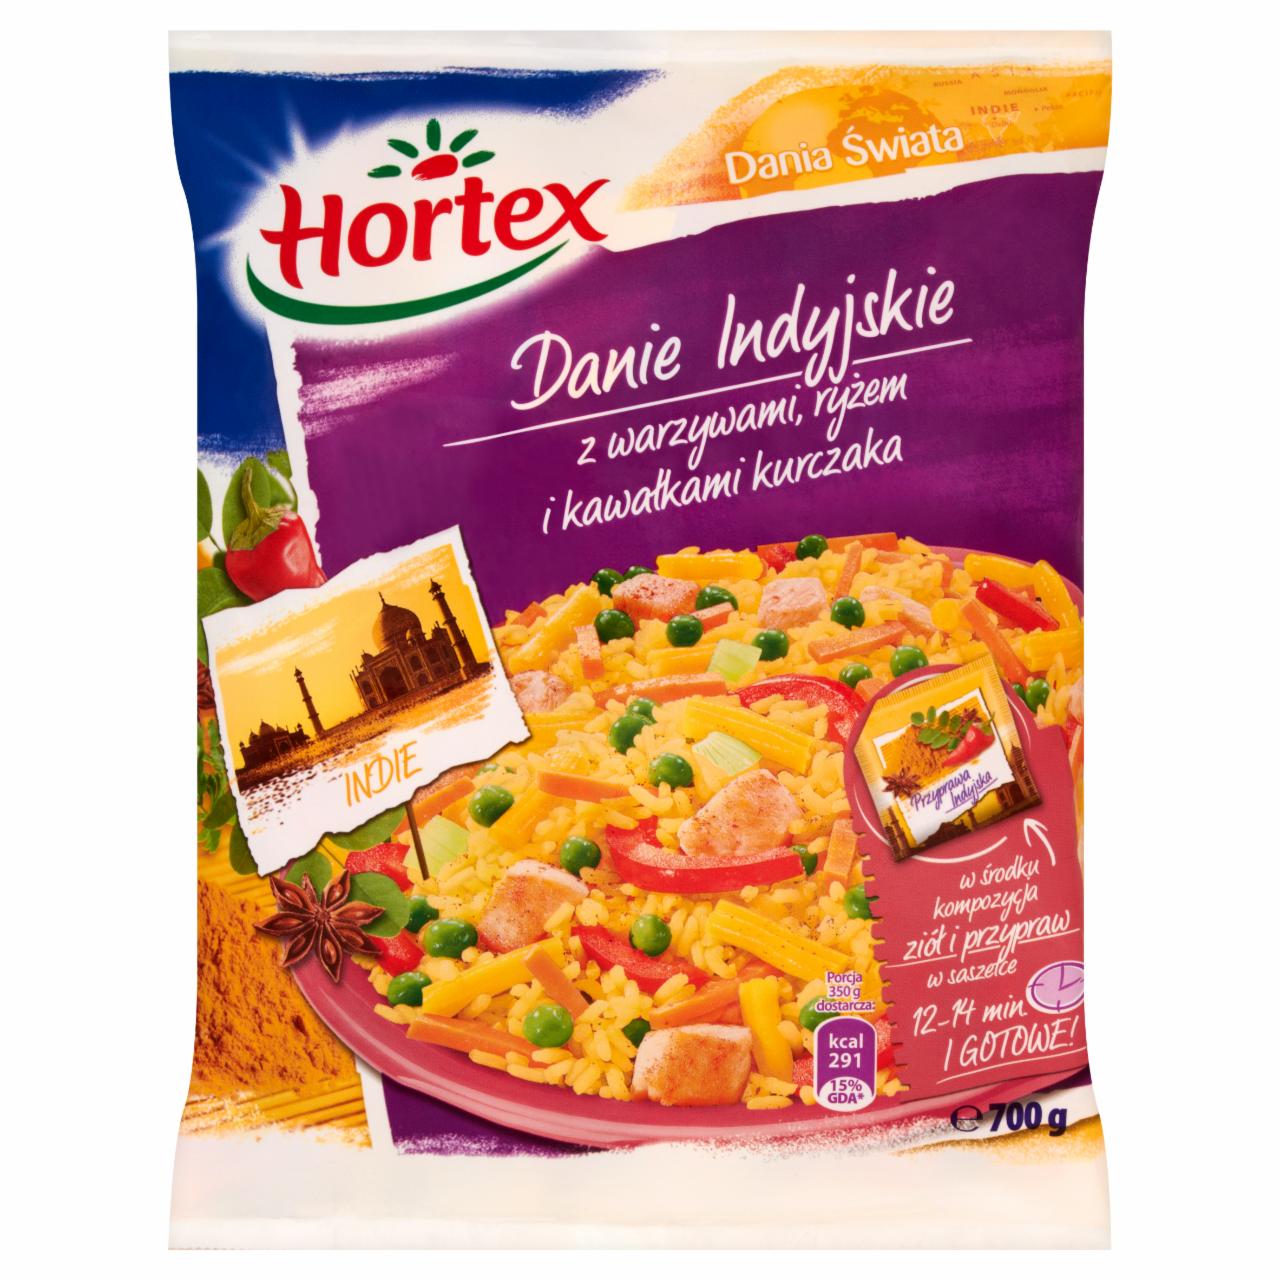 Zdjęcia - Hortex Dania Świata Danie Indyjskie z warzywami ryżem i kawałkami kurczaka 700 g